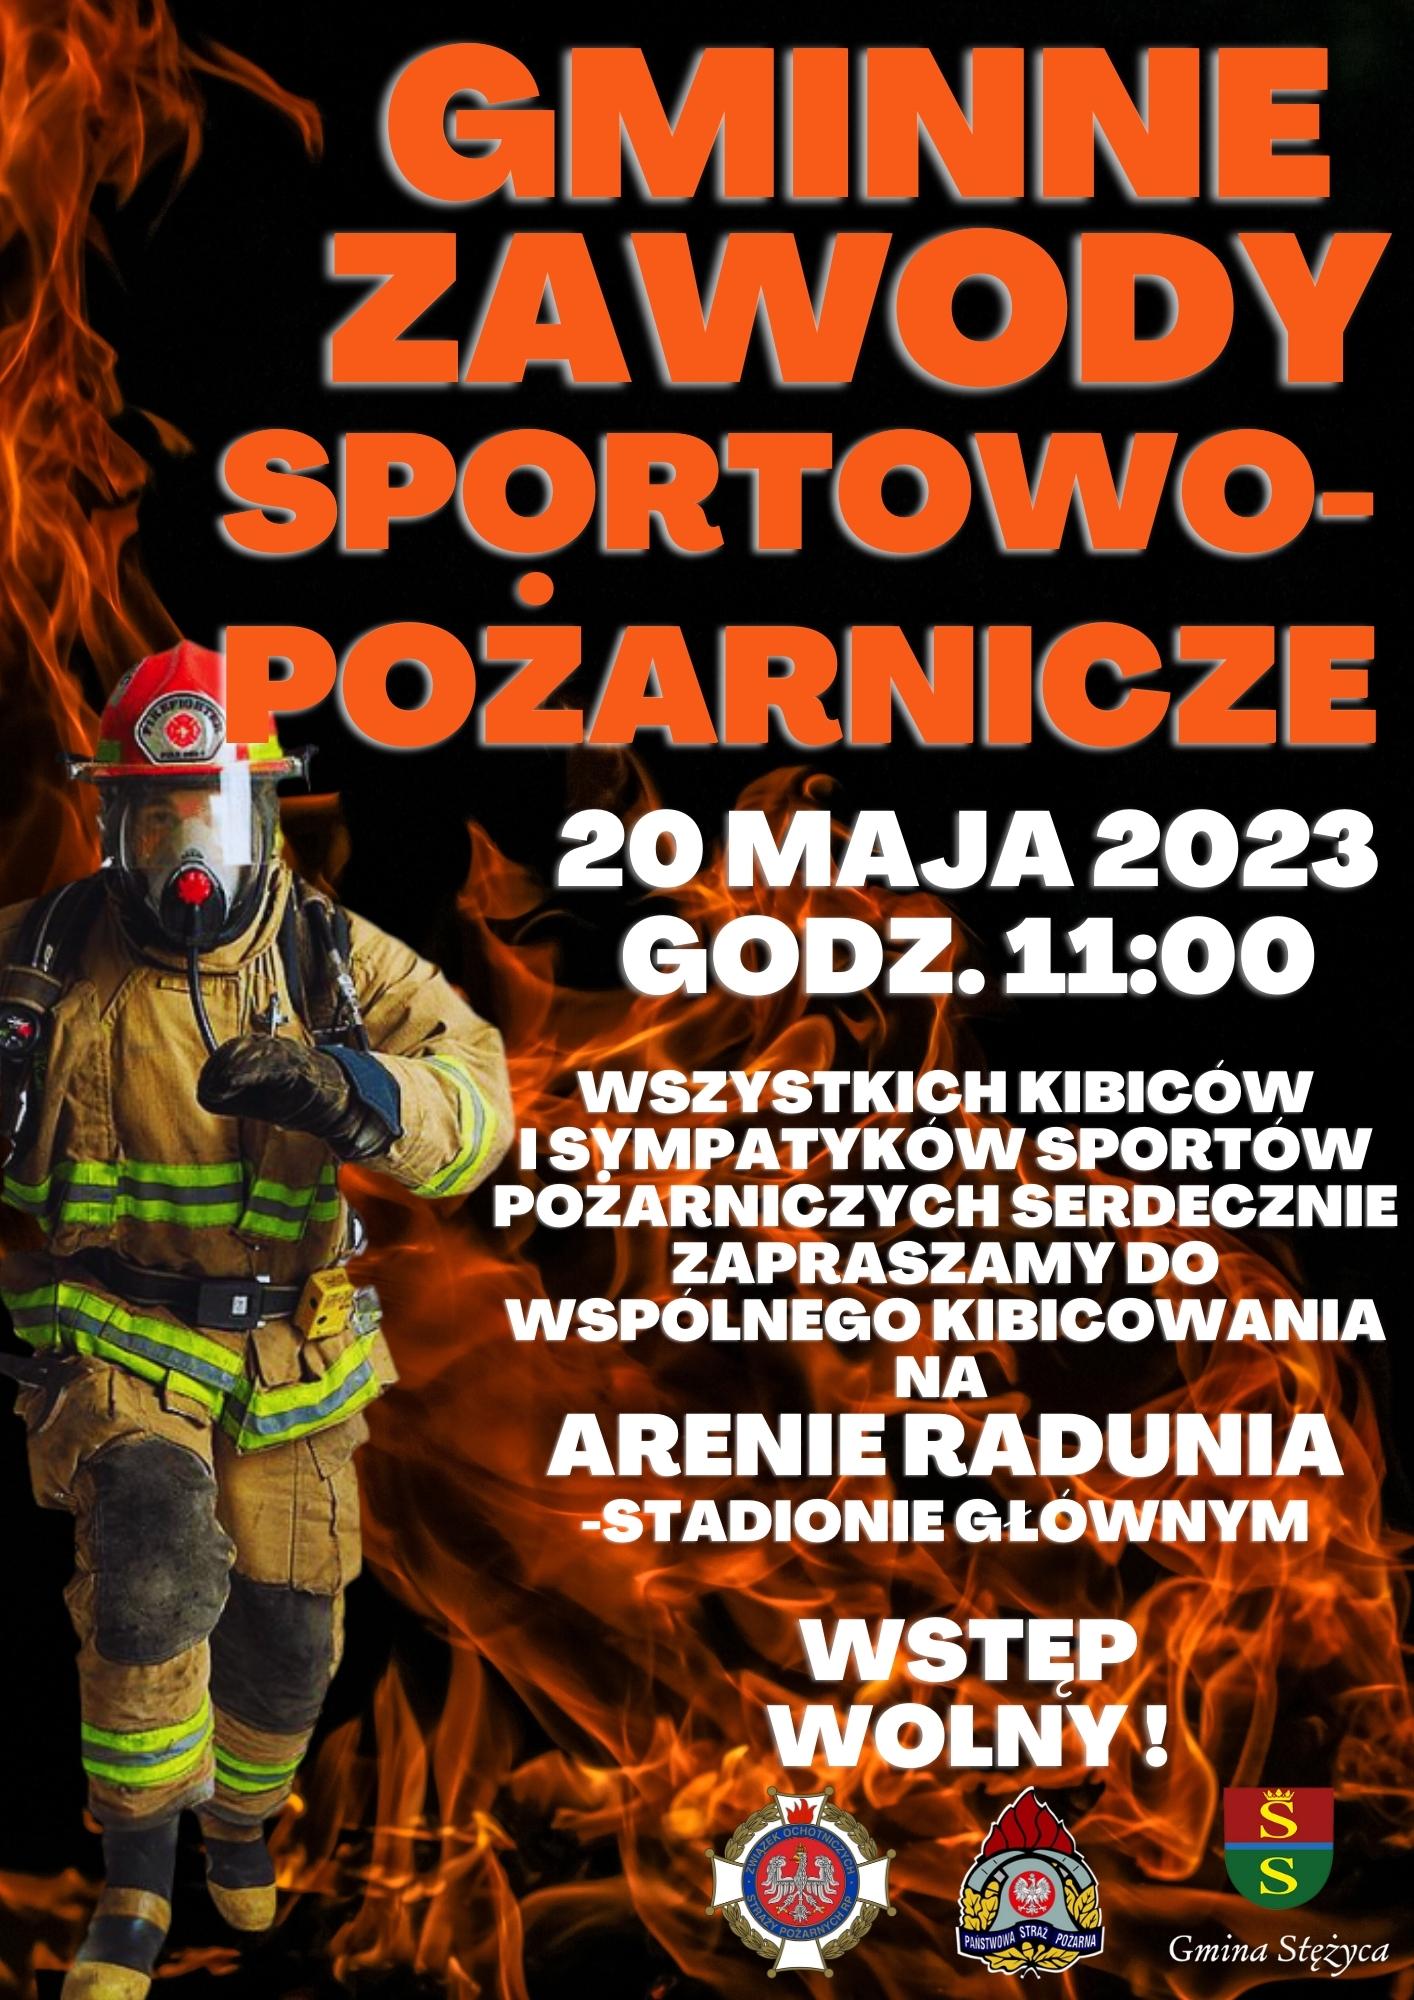 Gminne zawody sportowo-pożarnicze - 20 maja 2023 r. godz. 11:00